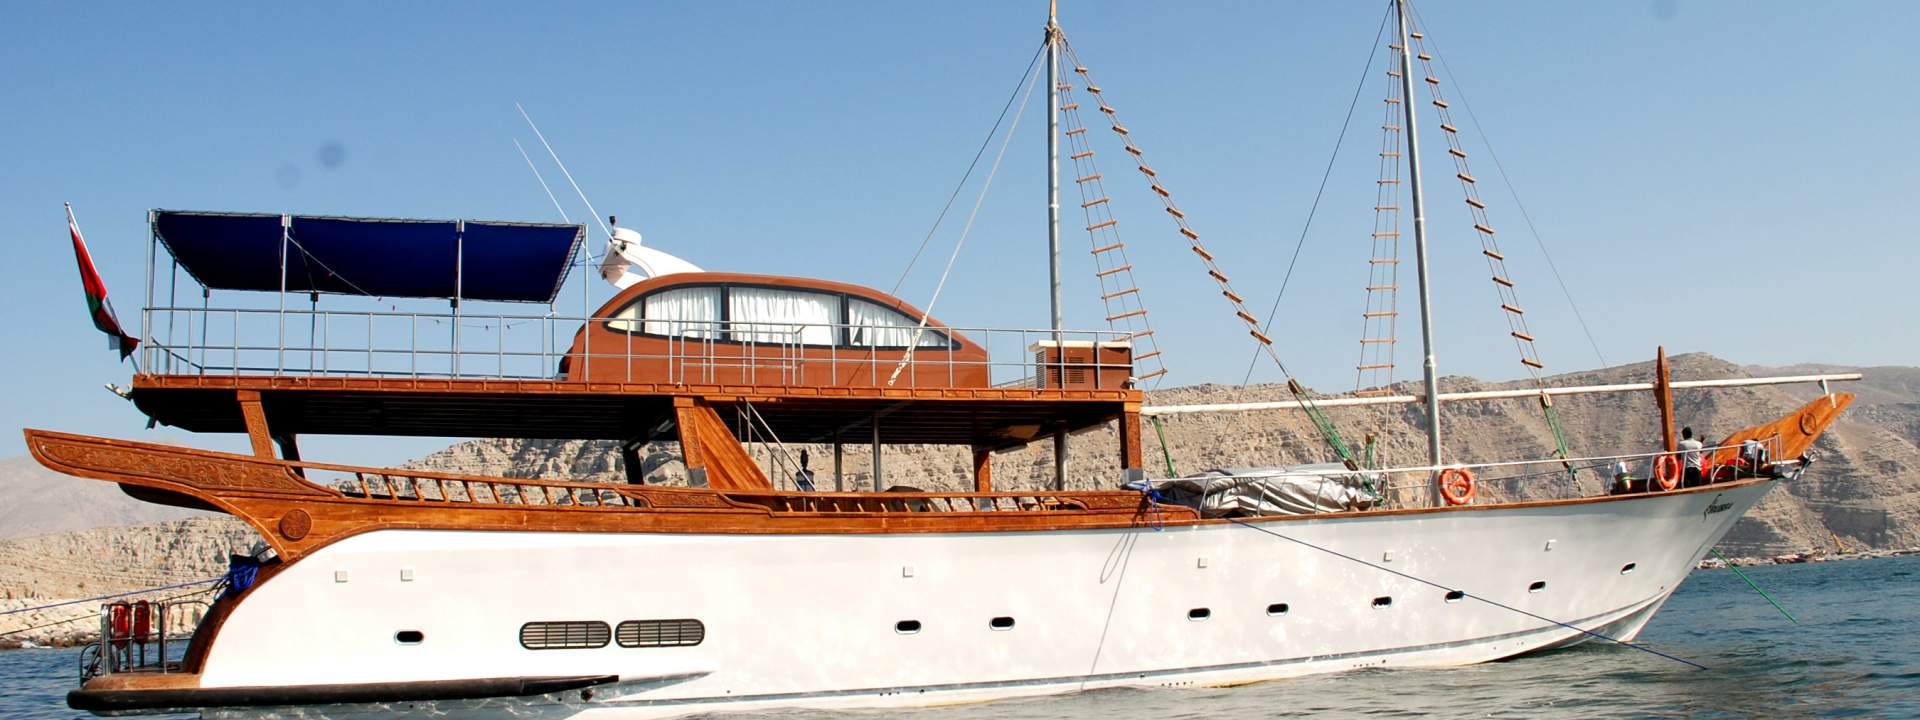 Yacht di Lusso Rubba